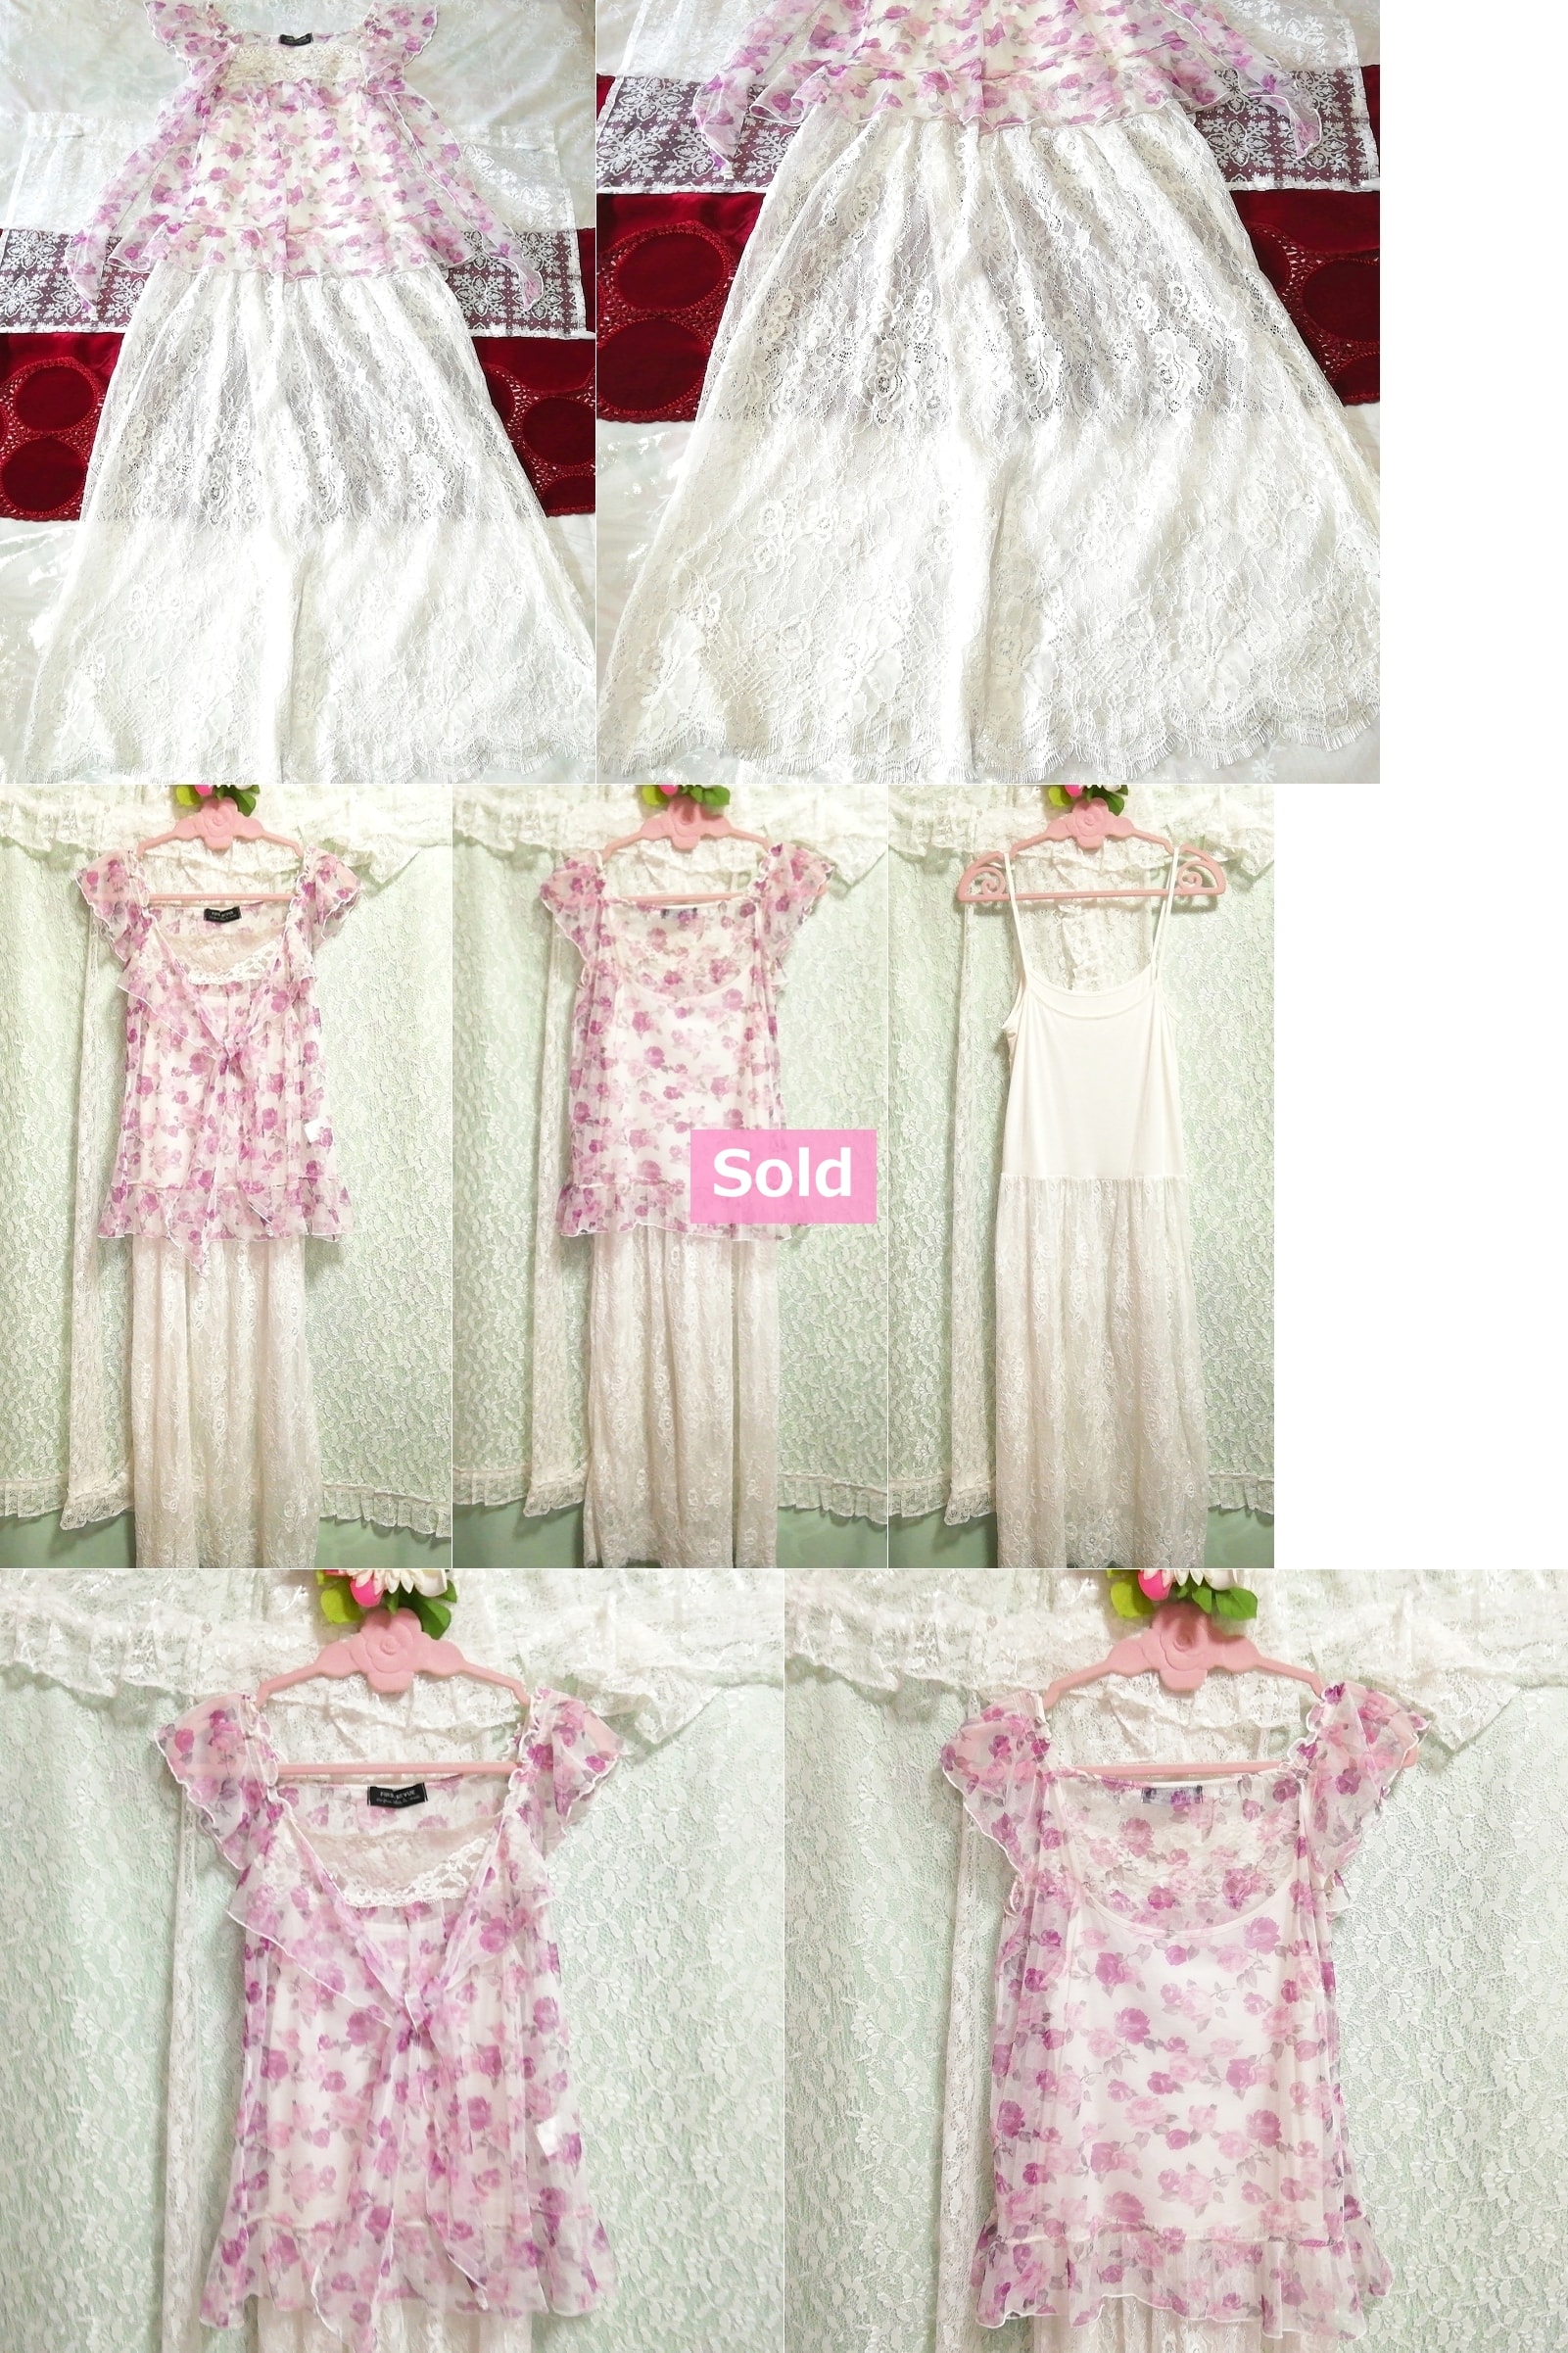 紫色花卉图案透明束腰外衣睡衣吊带背心娃娃装连衣裙 2 件, 时尚, 女士时装, 睡衣